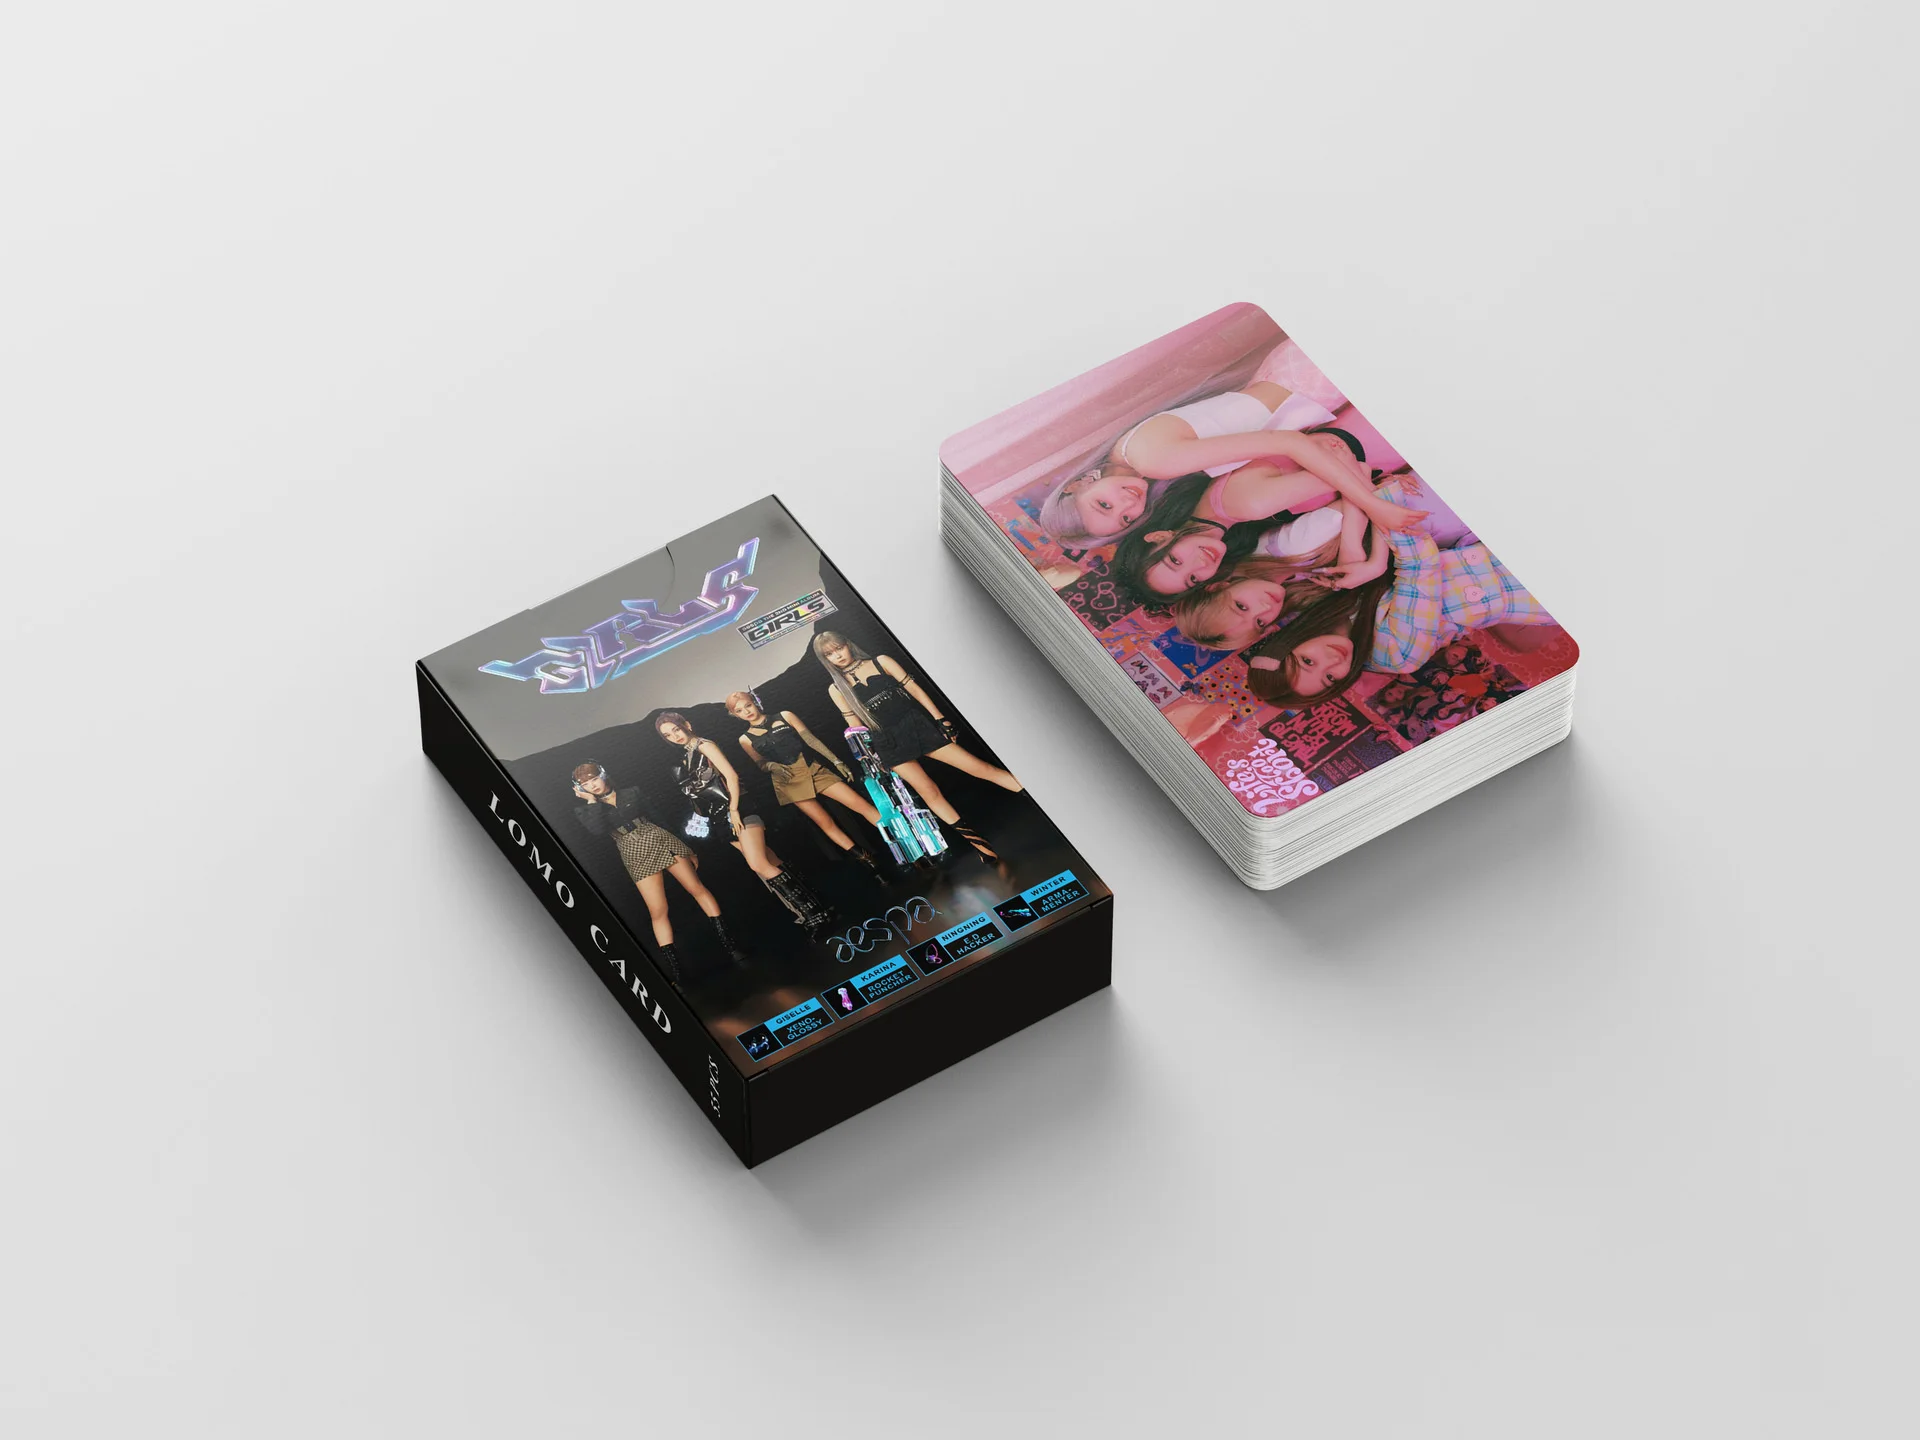 55 adet Kpop Aespa Yeni Albüm Kızlar Fotocard Lomo Kartı HD Fotoğraf Hayranları Koleksiyonu Kartpostal Hediyeler Kadınlar İçin Poster 2